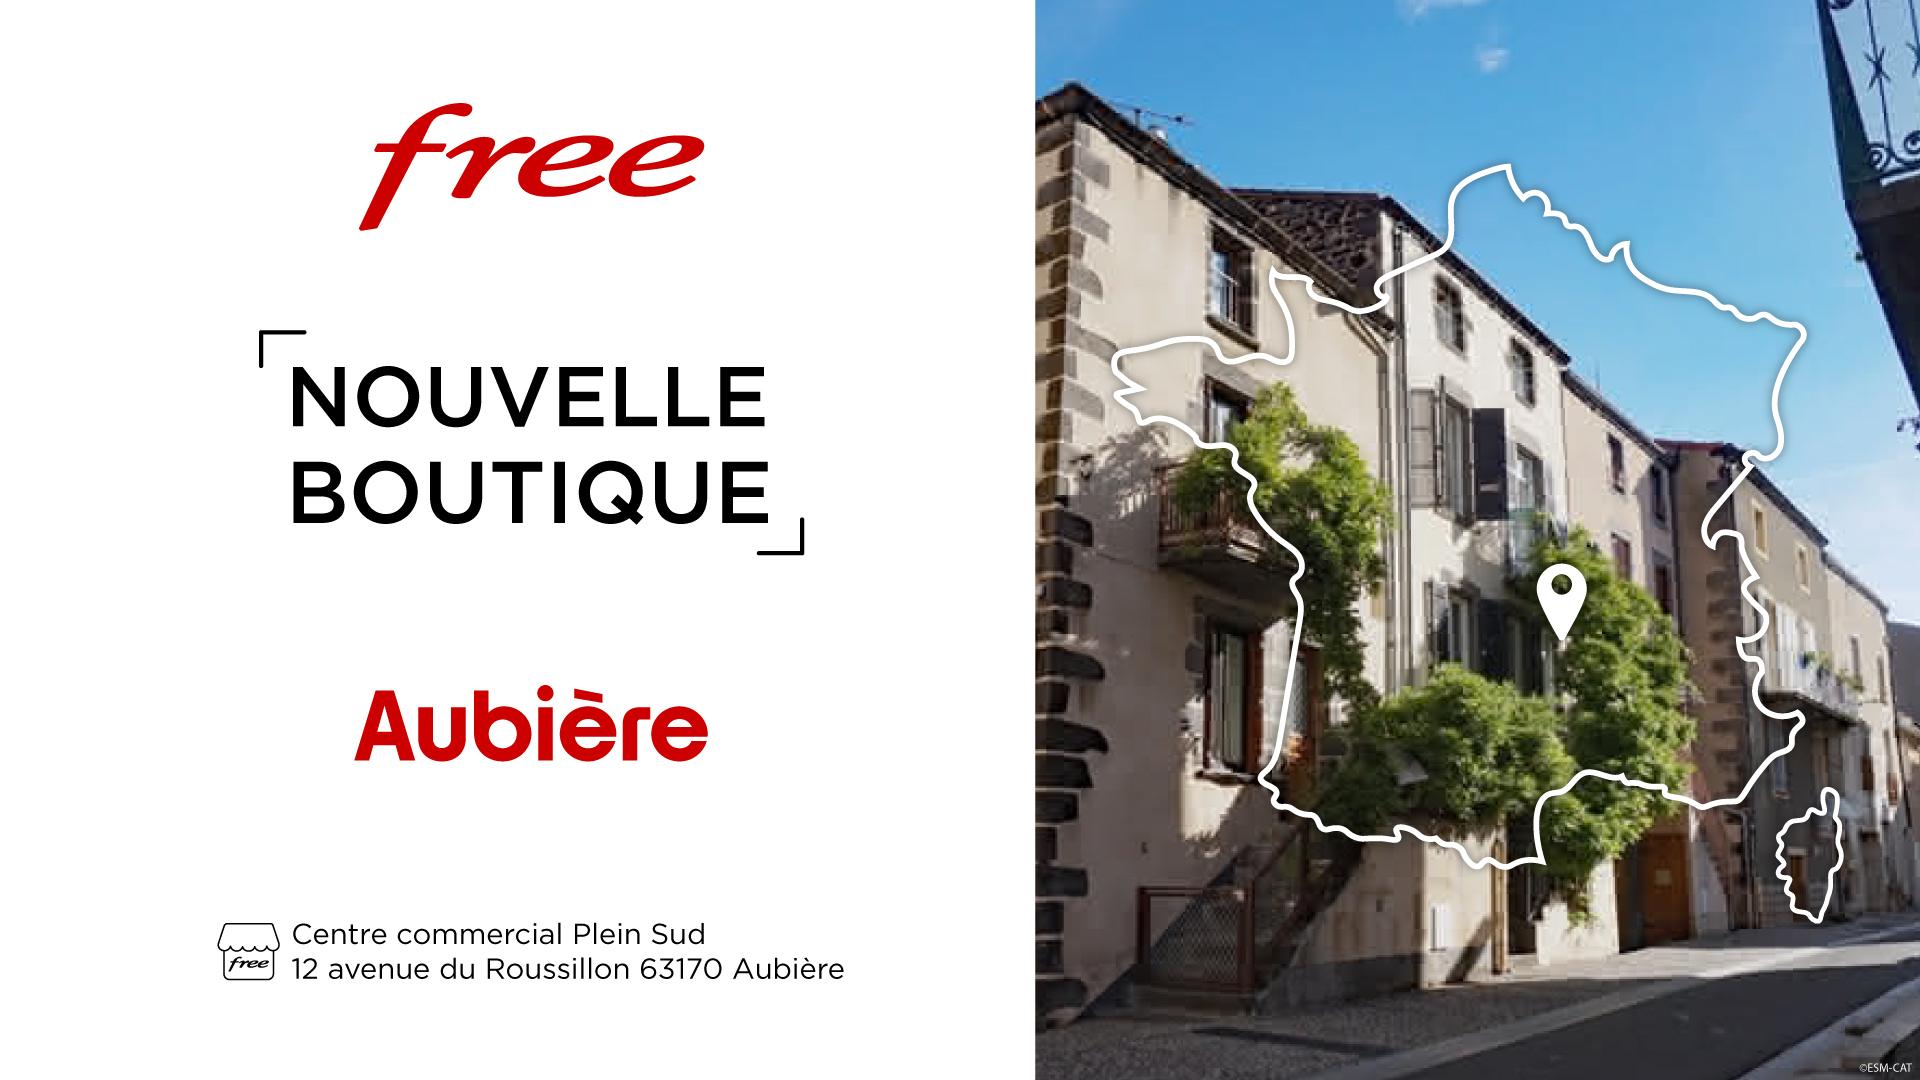 Découvrez la nouvelle boutique Free d’Aubière